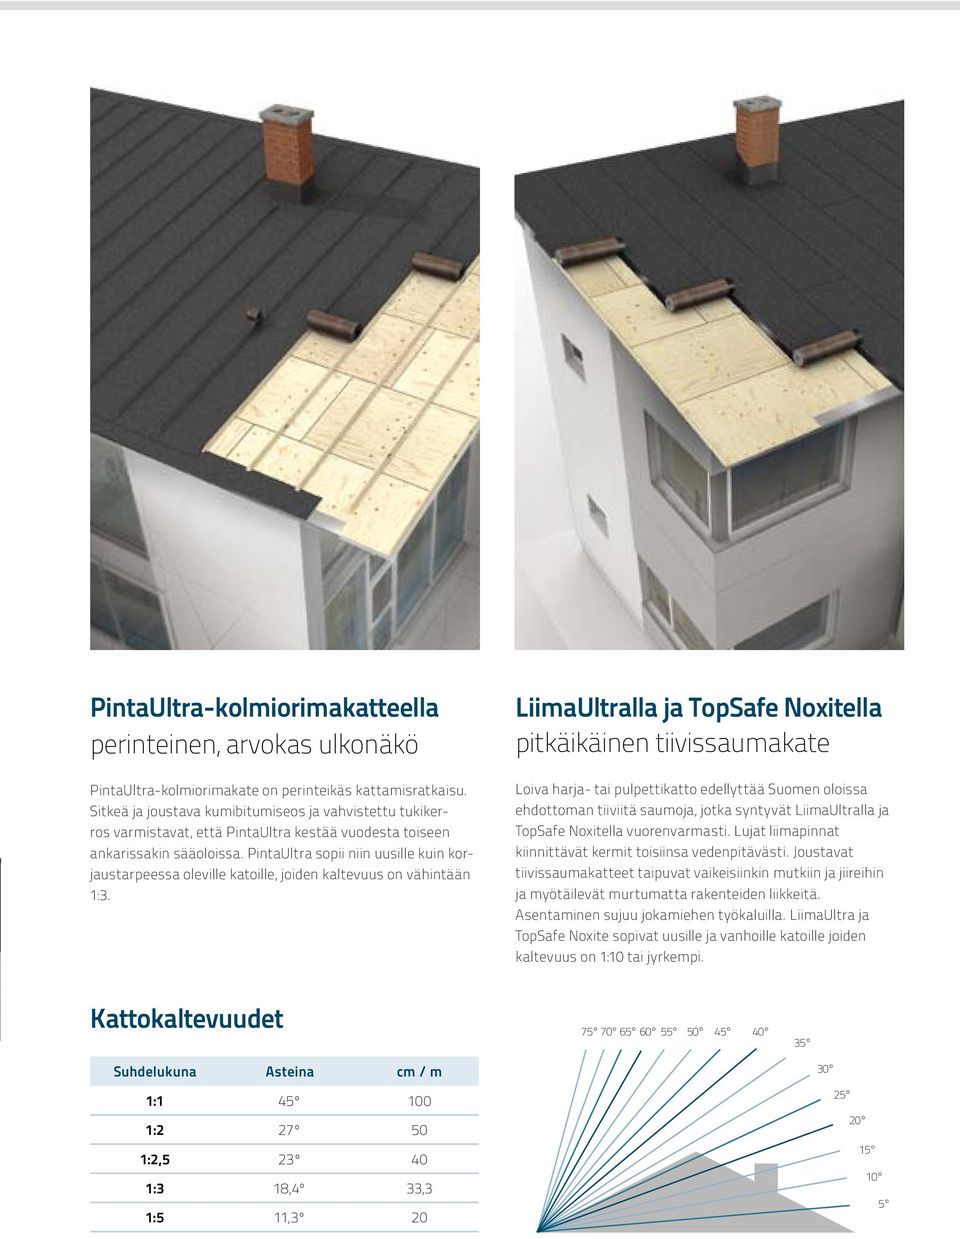 PintaUltra sopii niin uusille kuin korjaustarpeessa oleville katoille, joiden kaltevuus on vähintään 1:3.